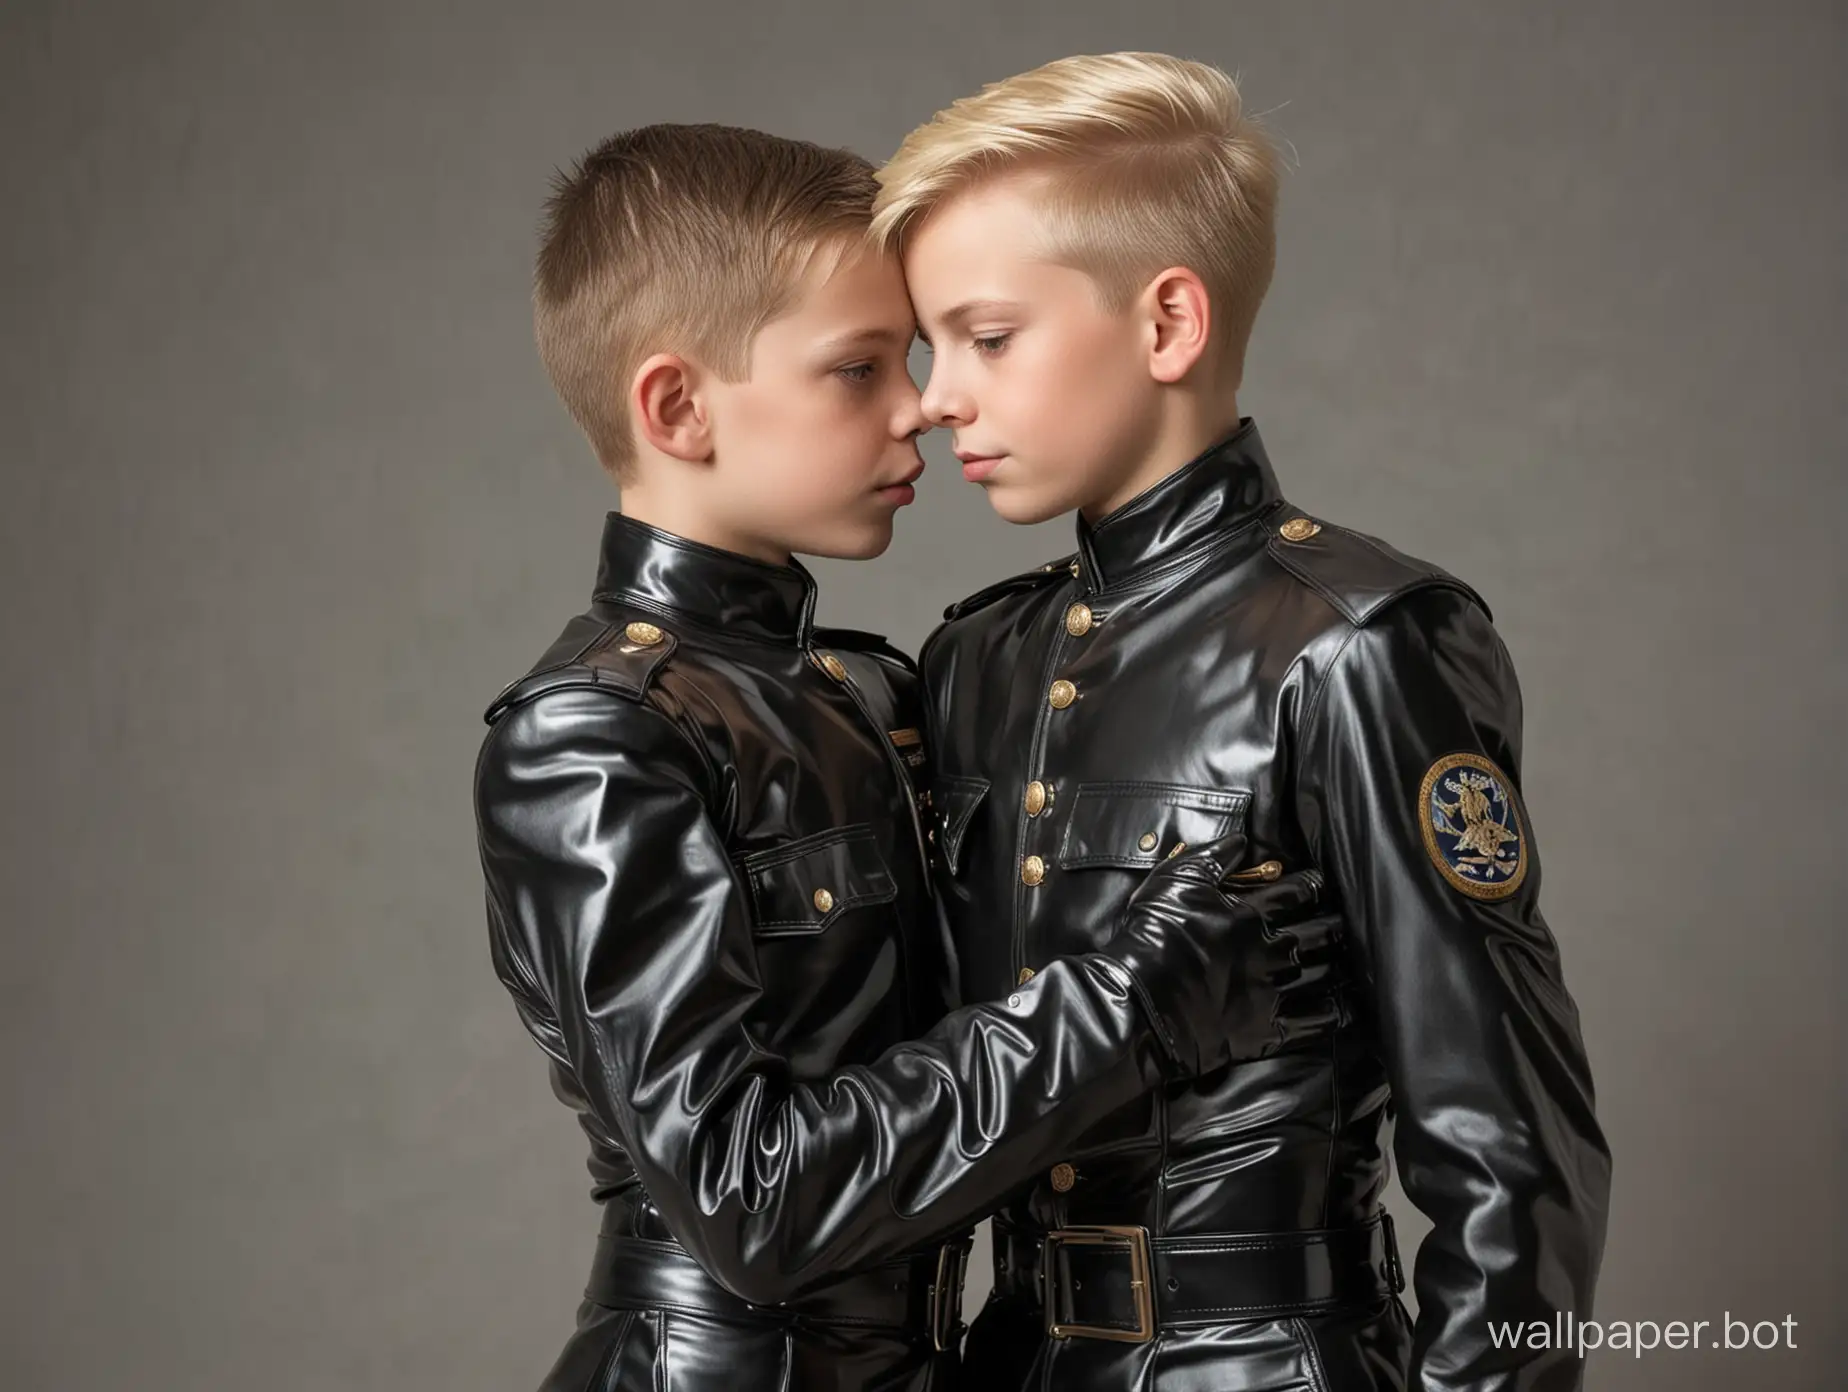 zwei junge knaben, einer blond, einer schwarzhaarig,  soldatenuniform aus latex, umarmen sich,